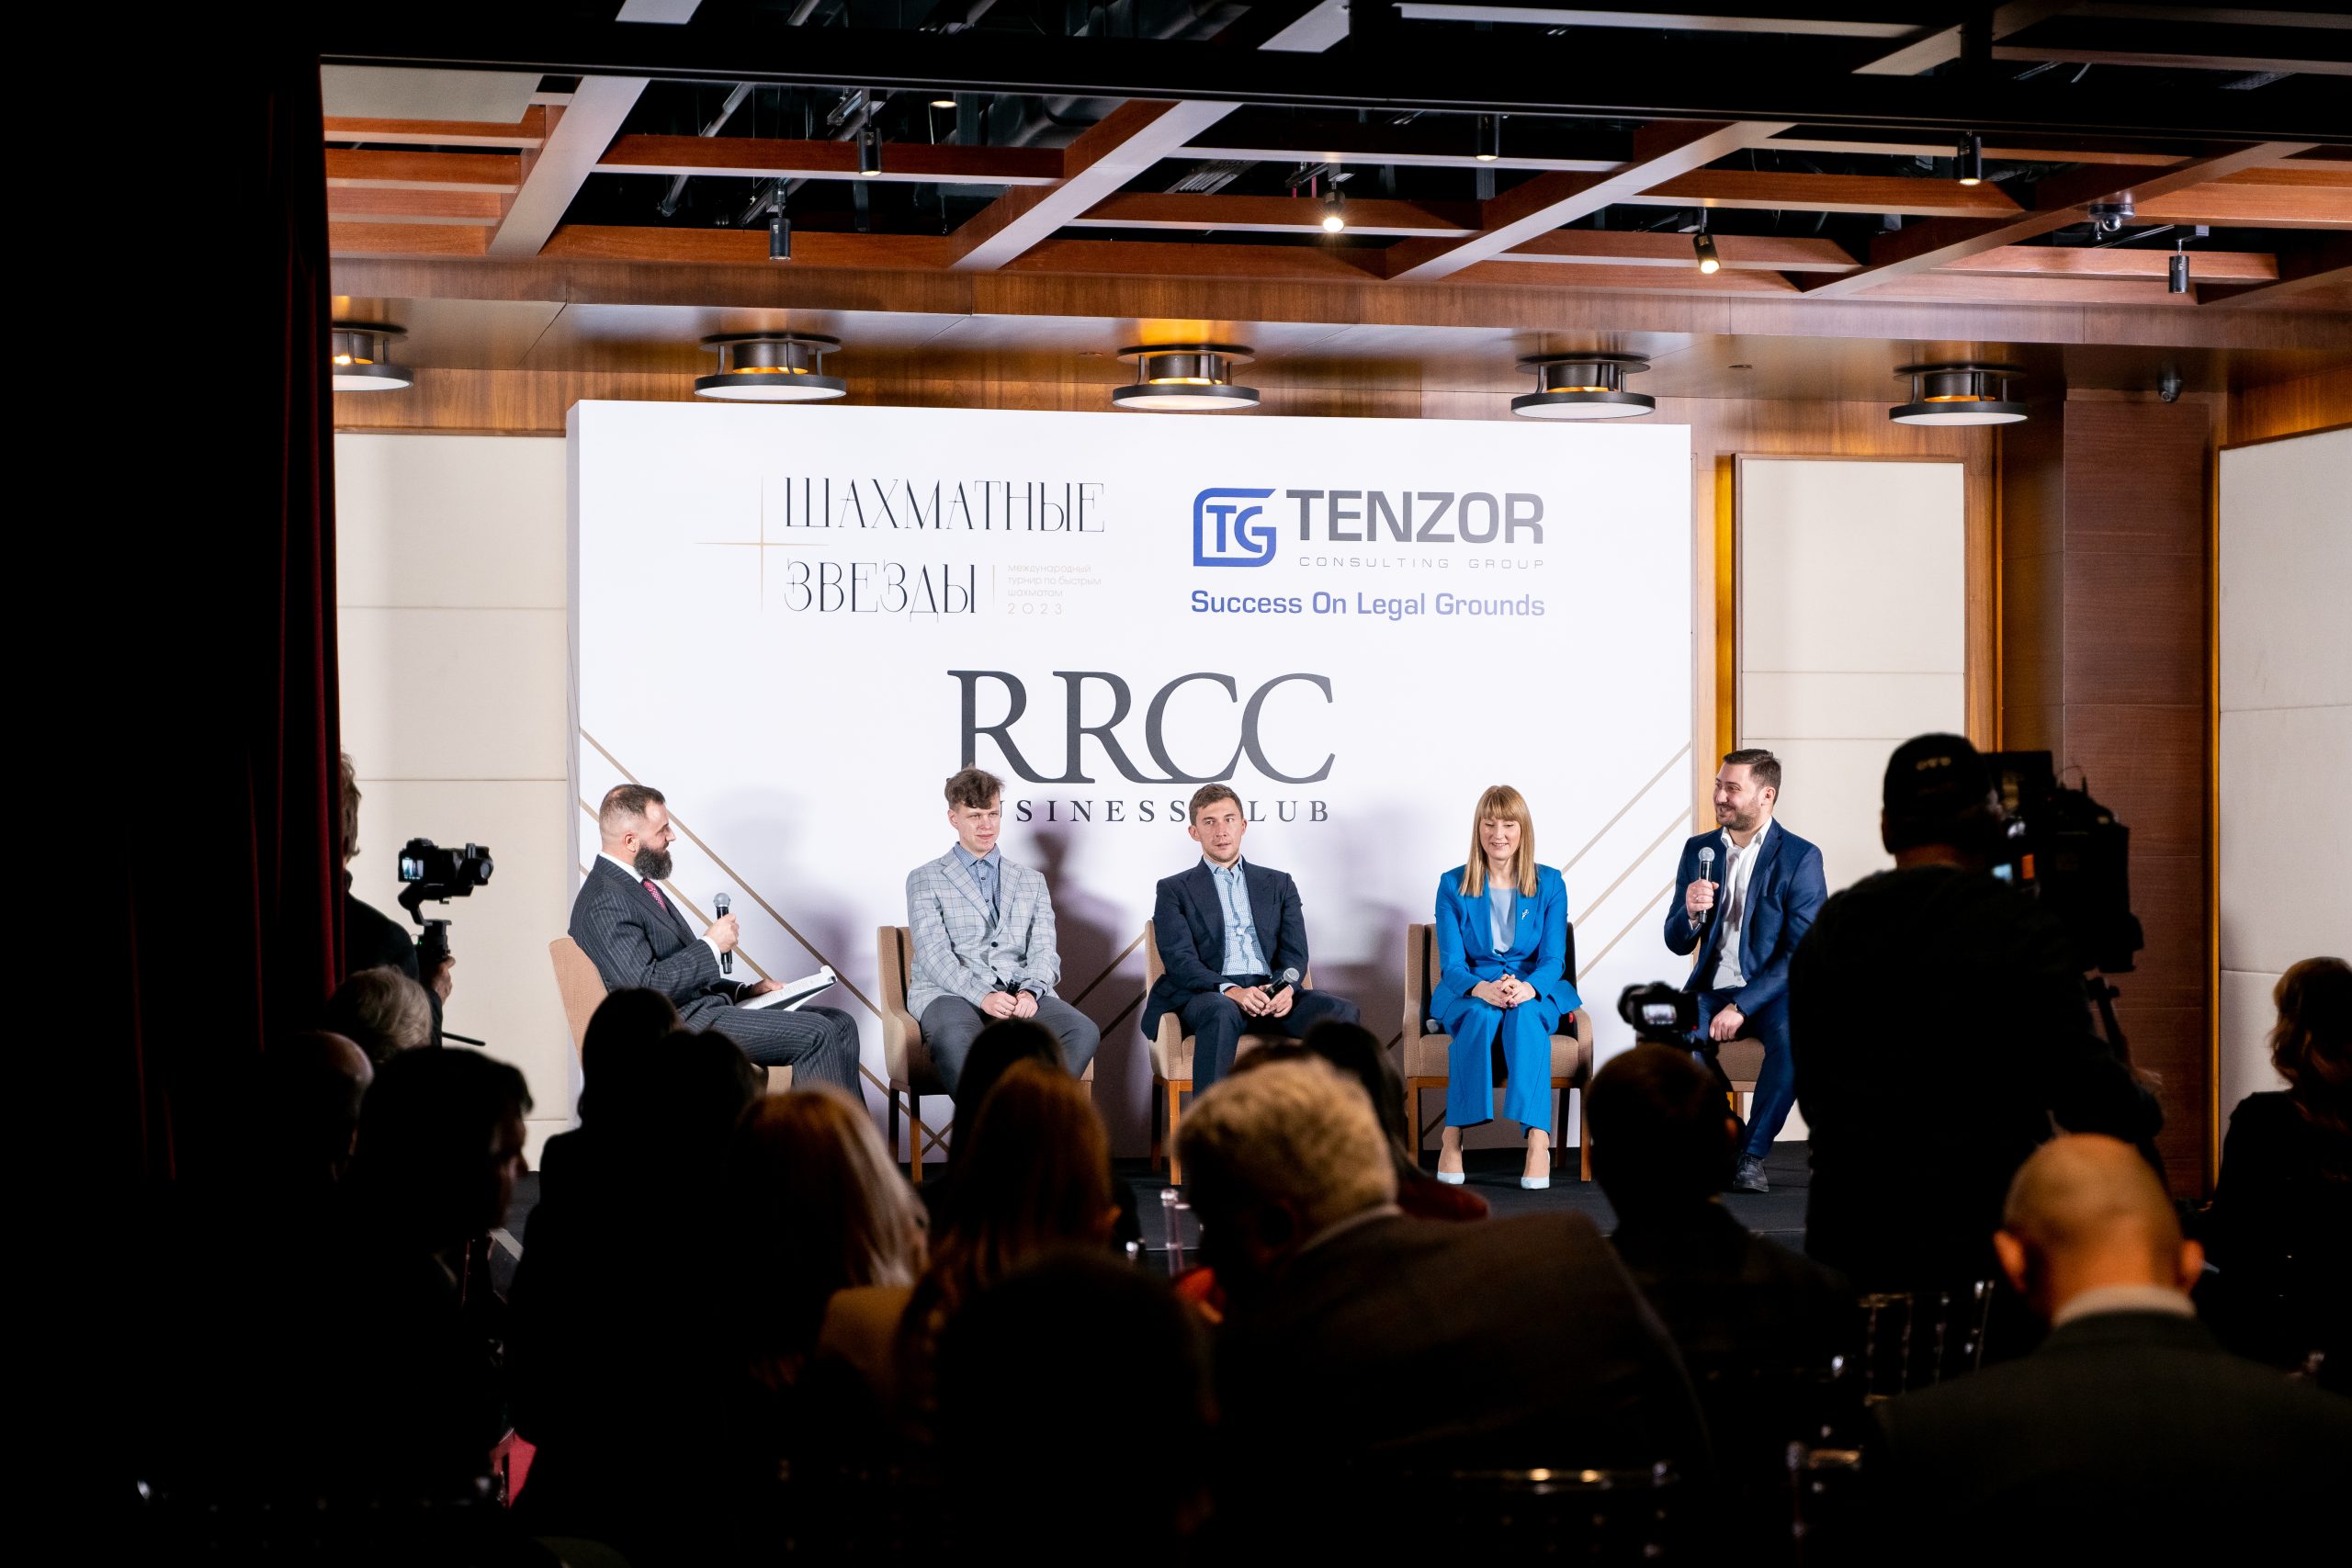 Шахматы и другие виды интеллектуального спорта как инструмент развития стратегического мышления в бизнесе. Рассказываем, как прошло заседание делового клуба RRCC и Tenzor Consulting Group.